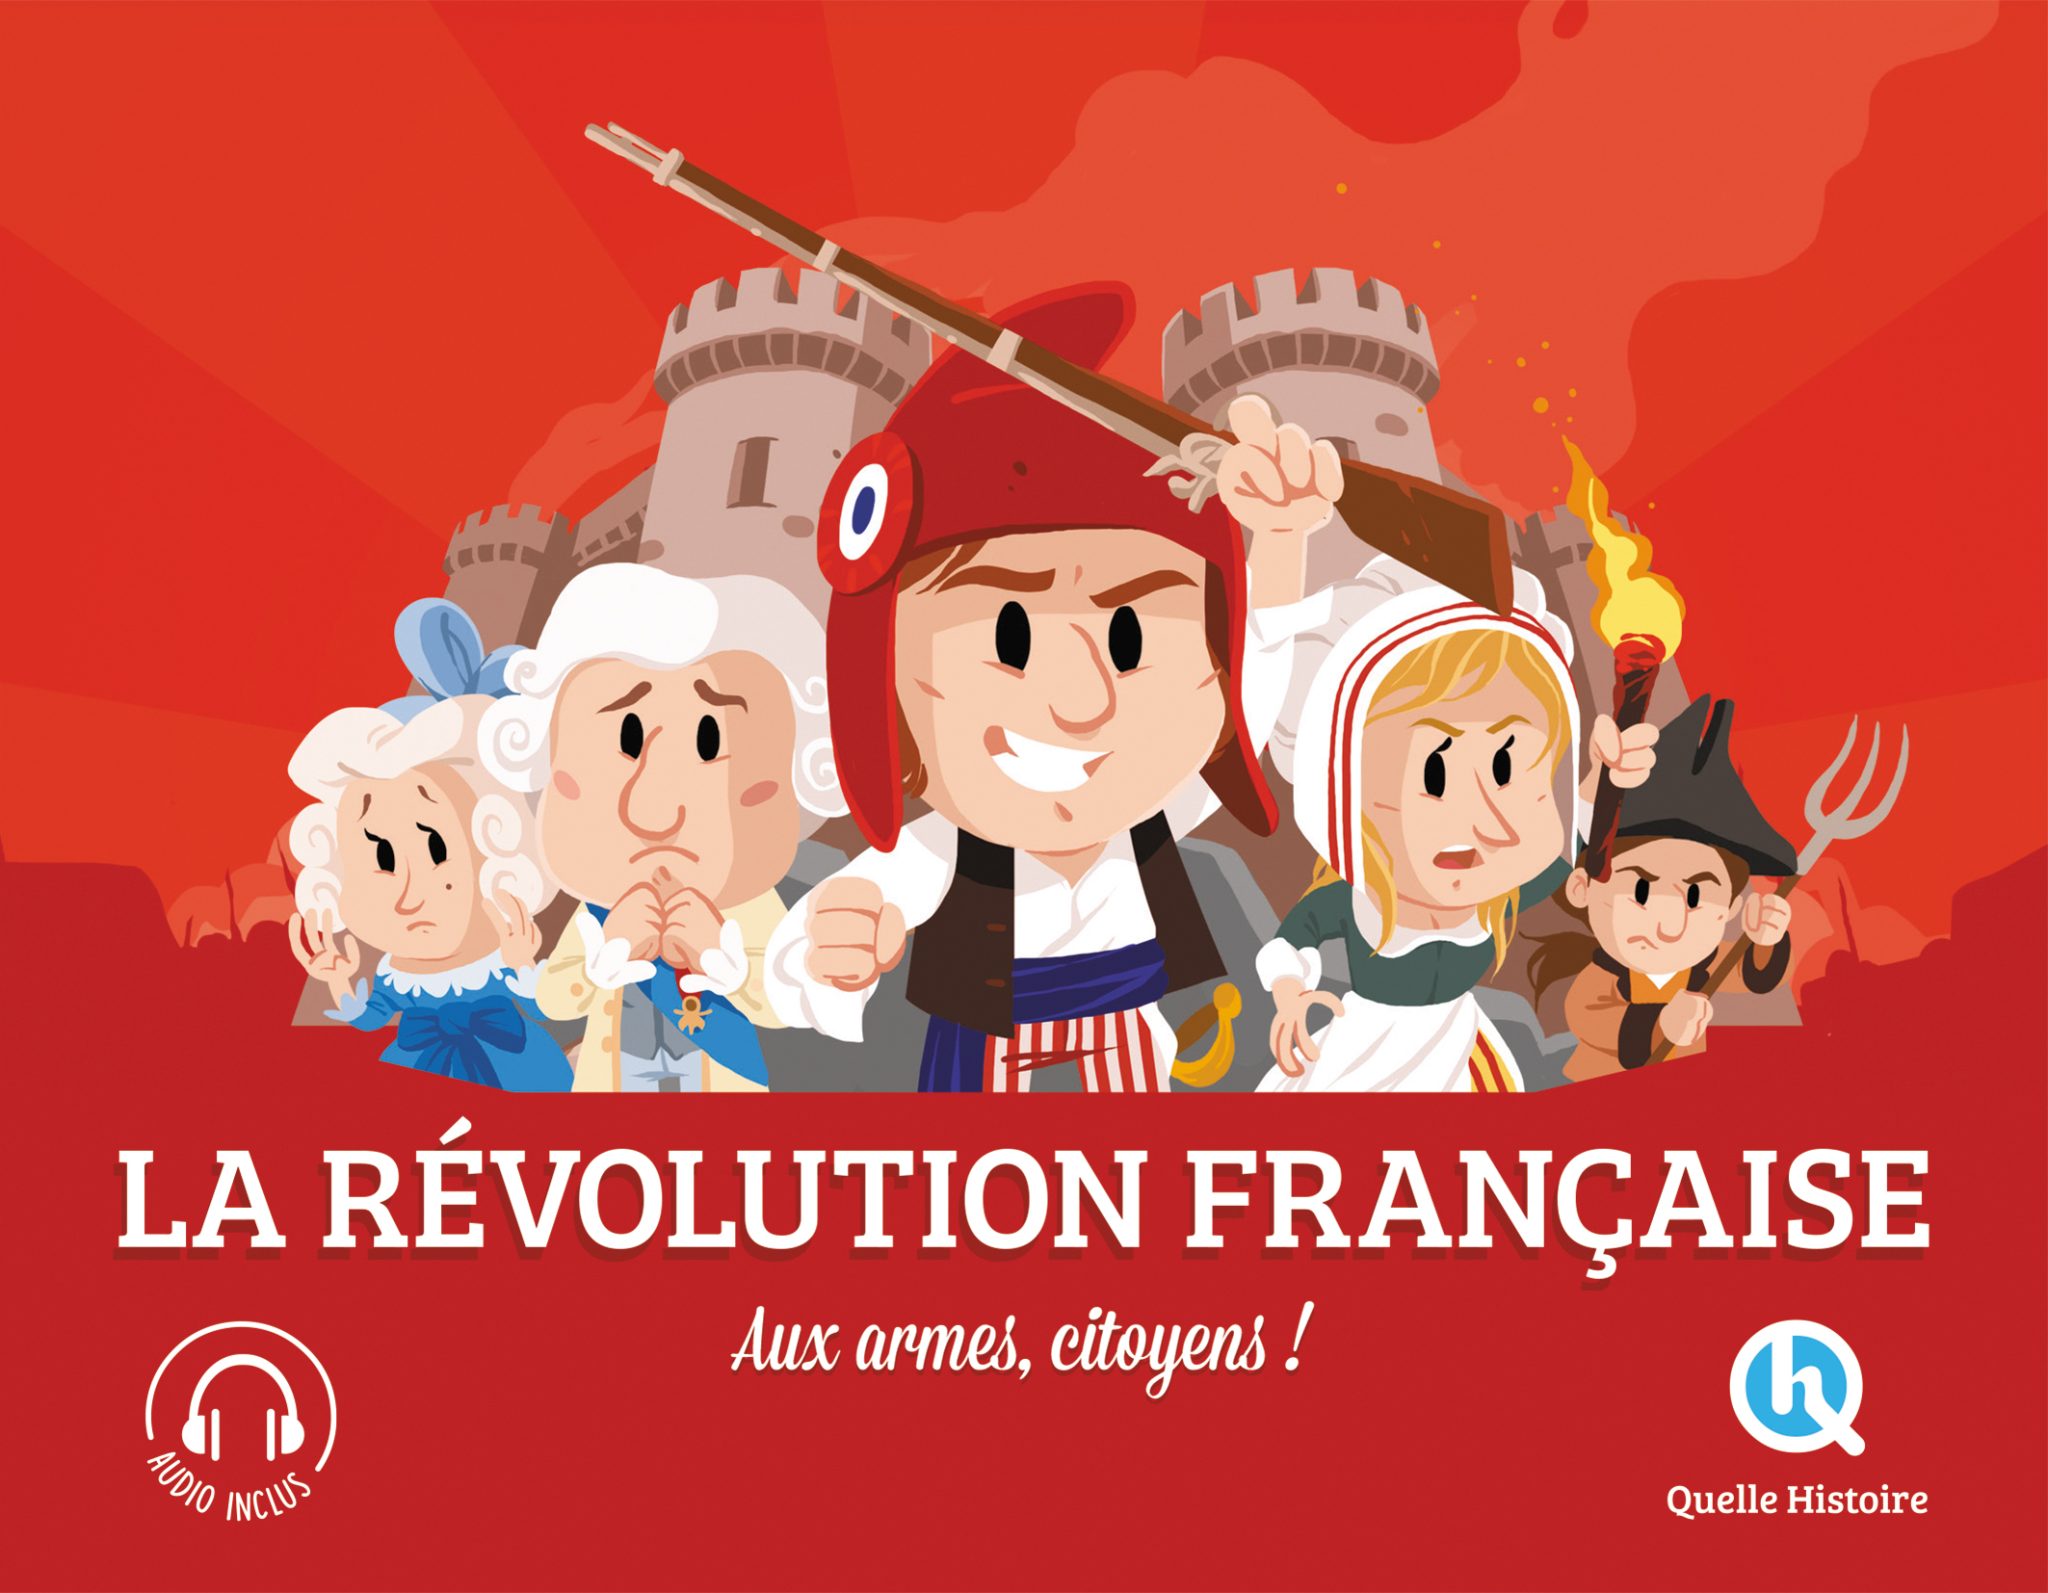 La Révolution française expliquée aux enfants